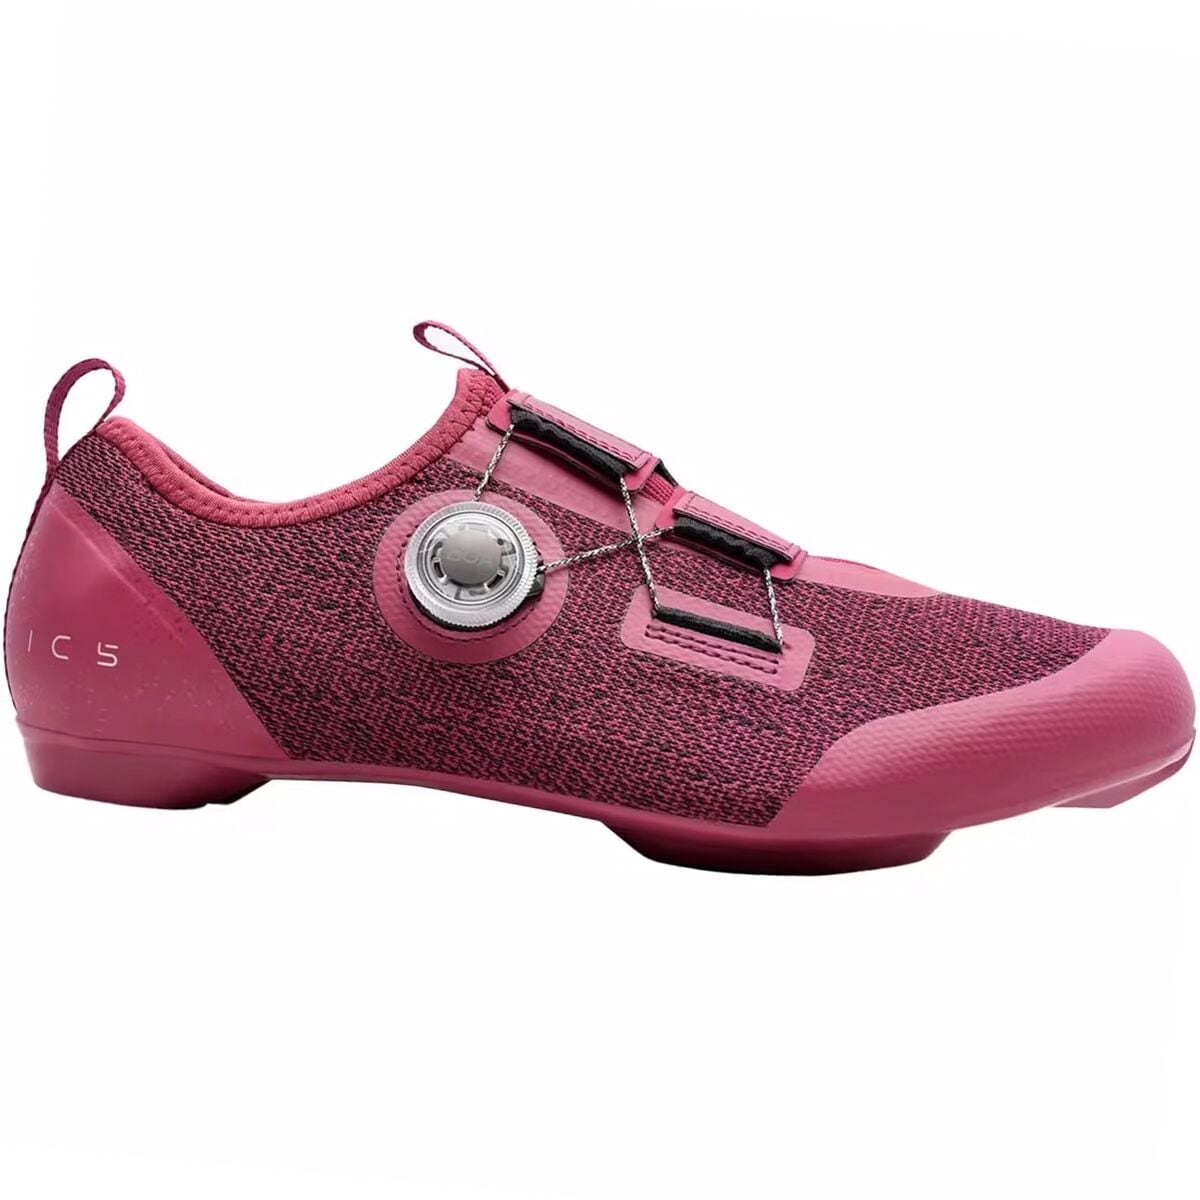 Shimano IC501 Cycling Shoe - Women's Wine Red, 43.0